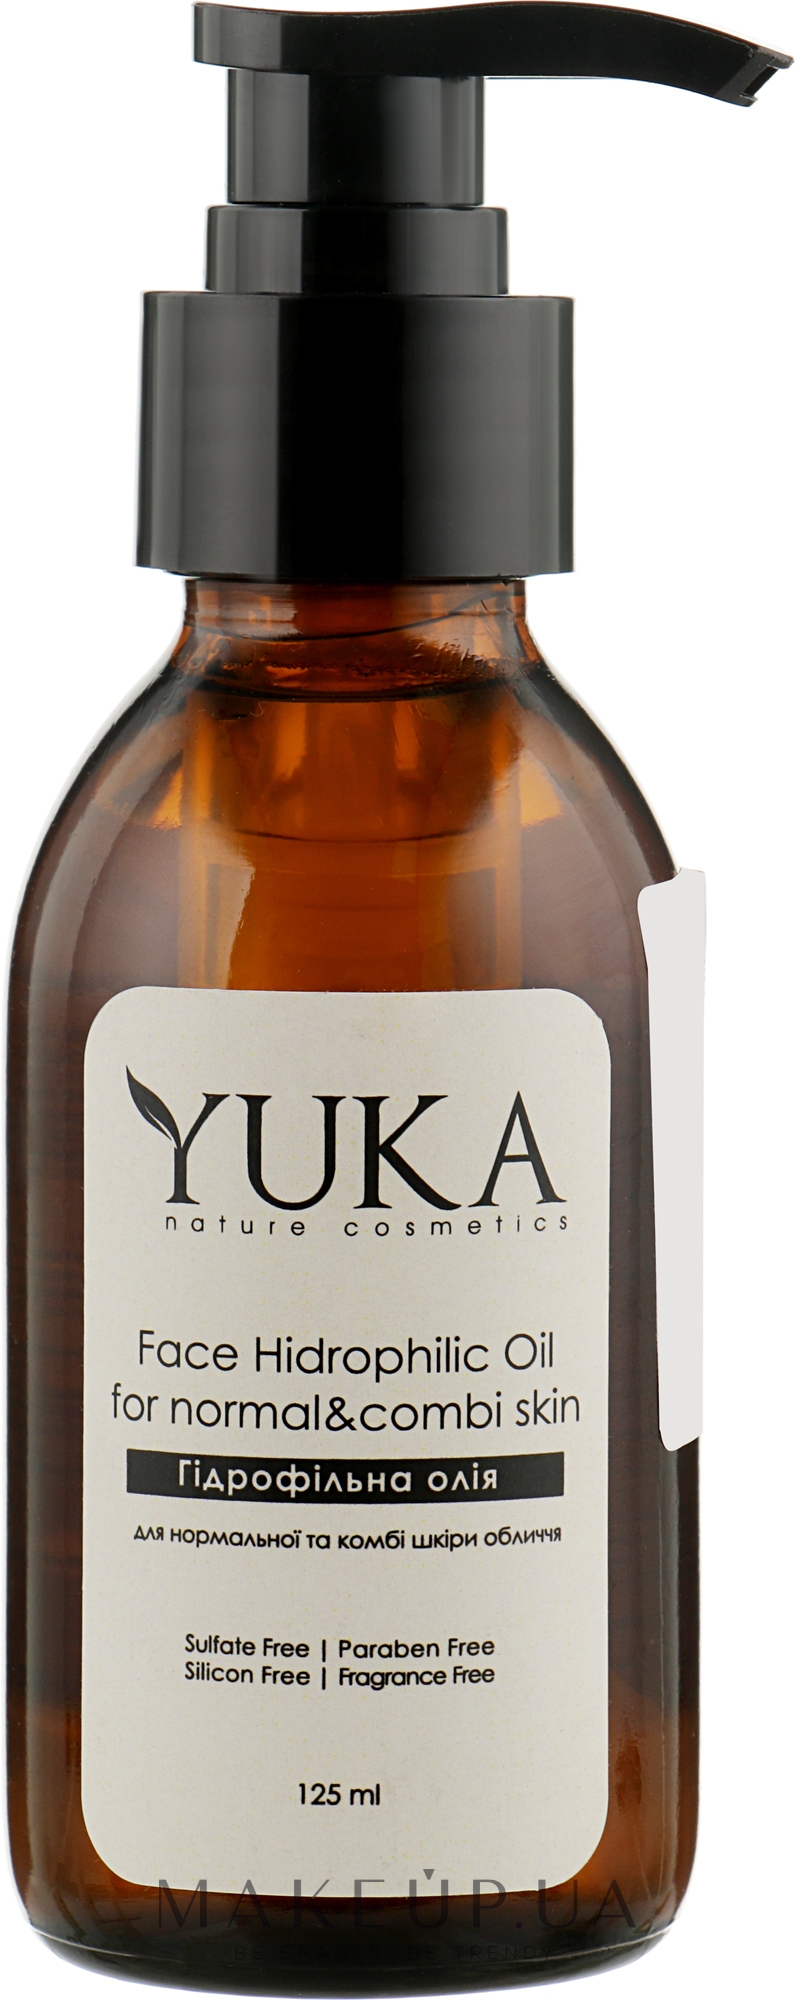 Гідрофільна олія для нормальної й комбінованої шкіри обличчя - Yuka Face Hidrophilic Oil — фото 125ml